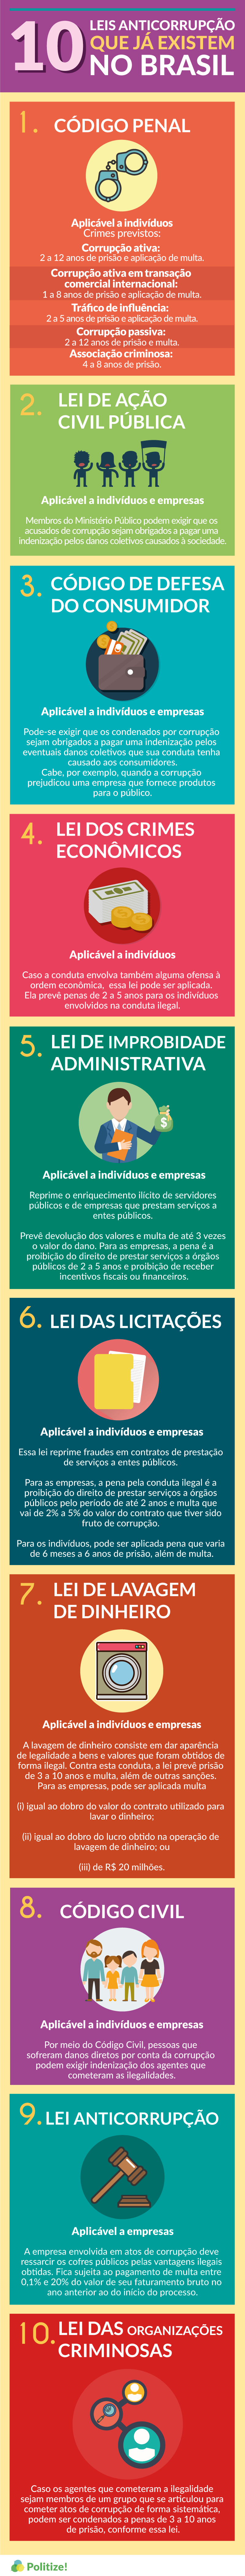 Veja 10 exemplos de leis brasileiras contra a corrupção